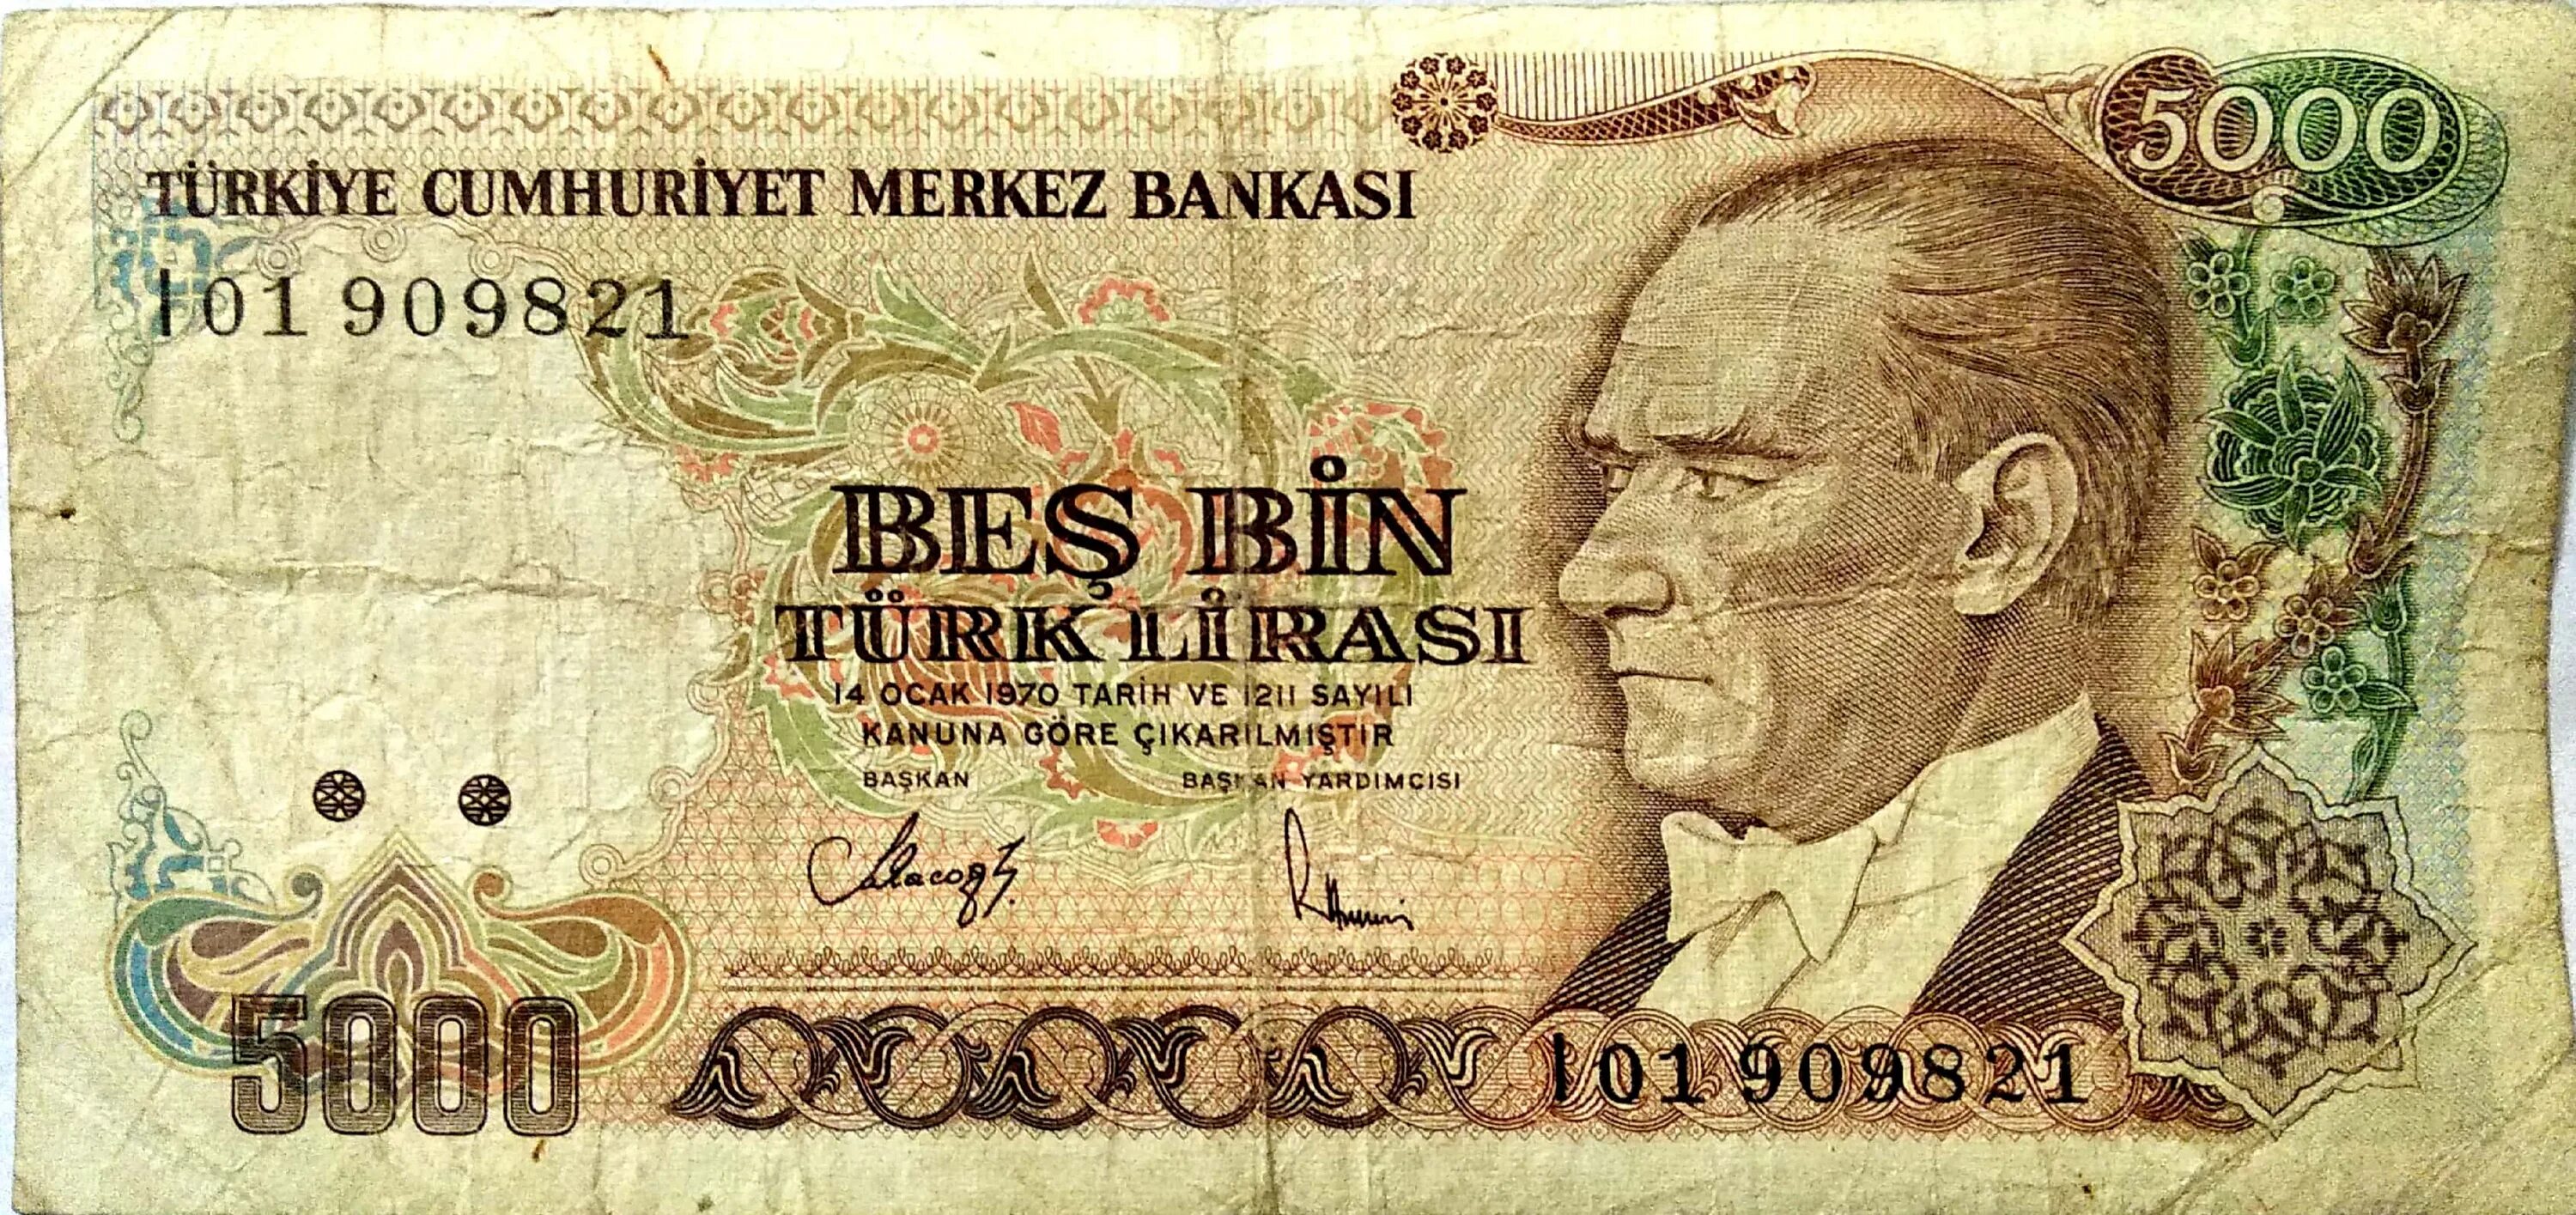 5 тысяч лир. 5000 Турецких лир. Банкноты турецкой Лиры. 100 Турецких лир банкнота.